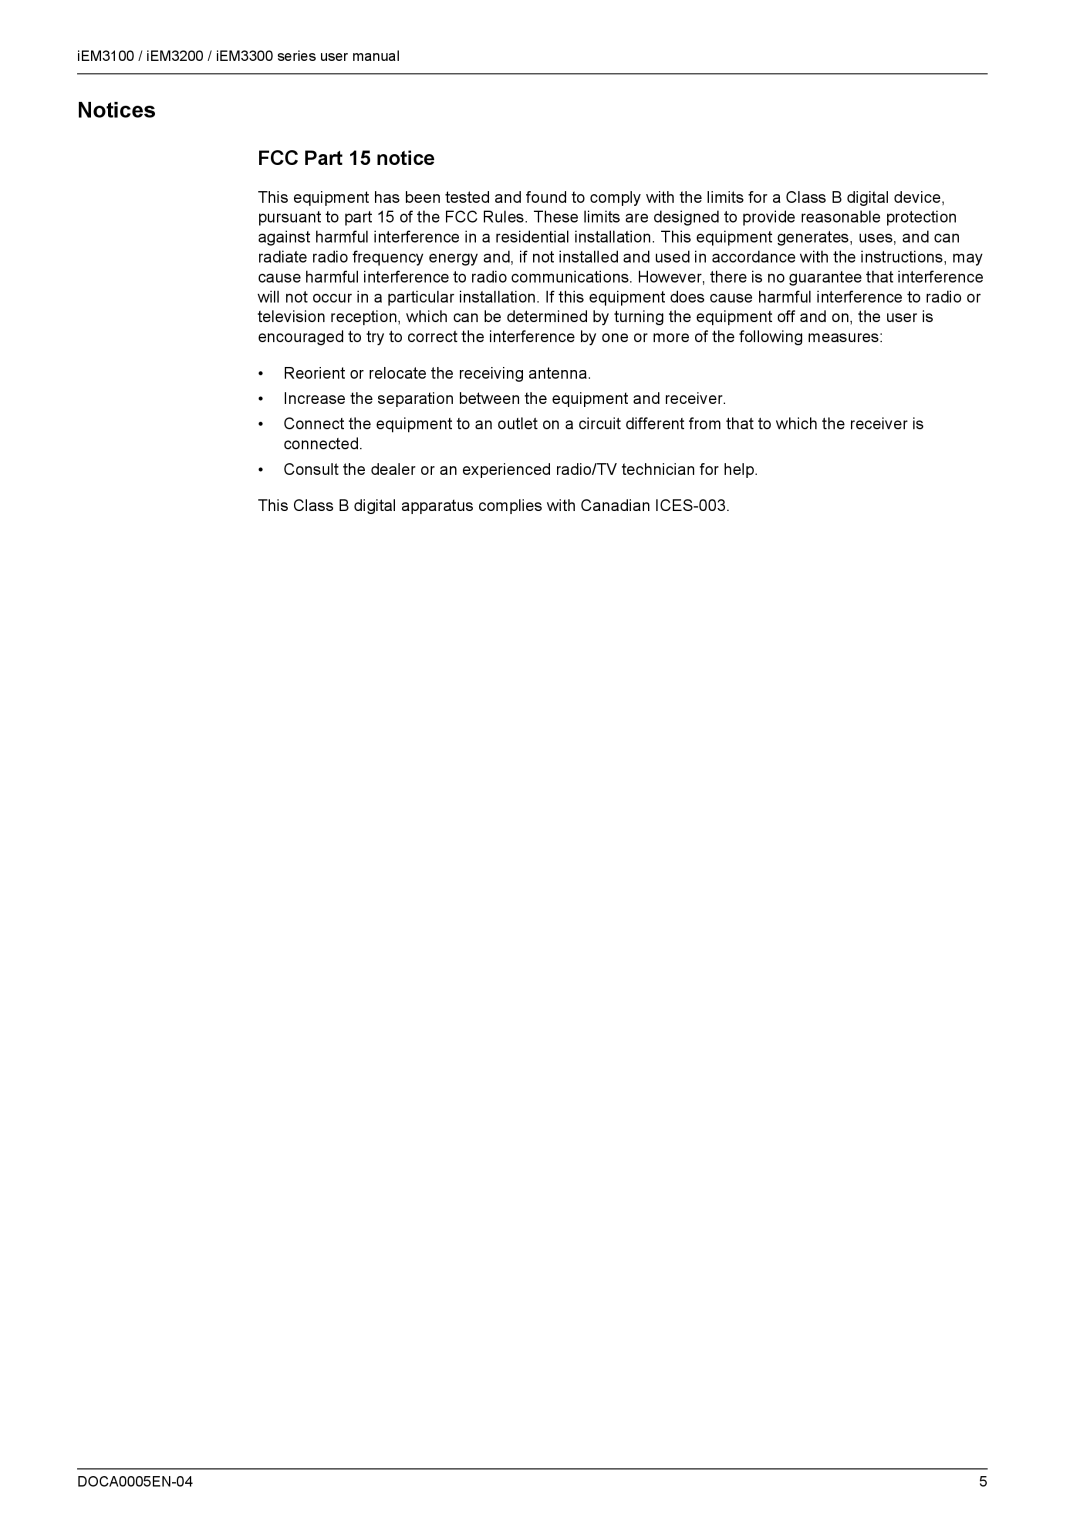 Schneider Electric iEM3100, iEM3300, iEM3200 user manual Notices, FCC Part 15 notice 